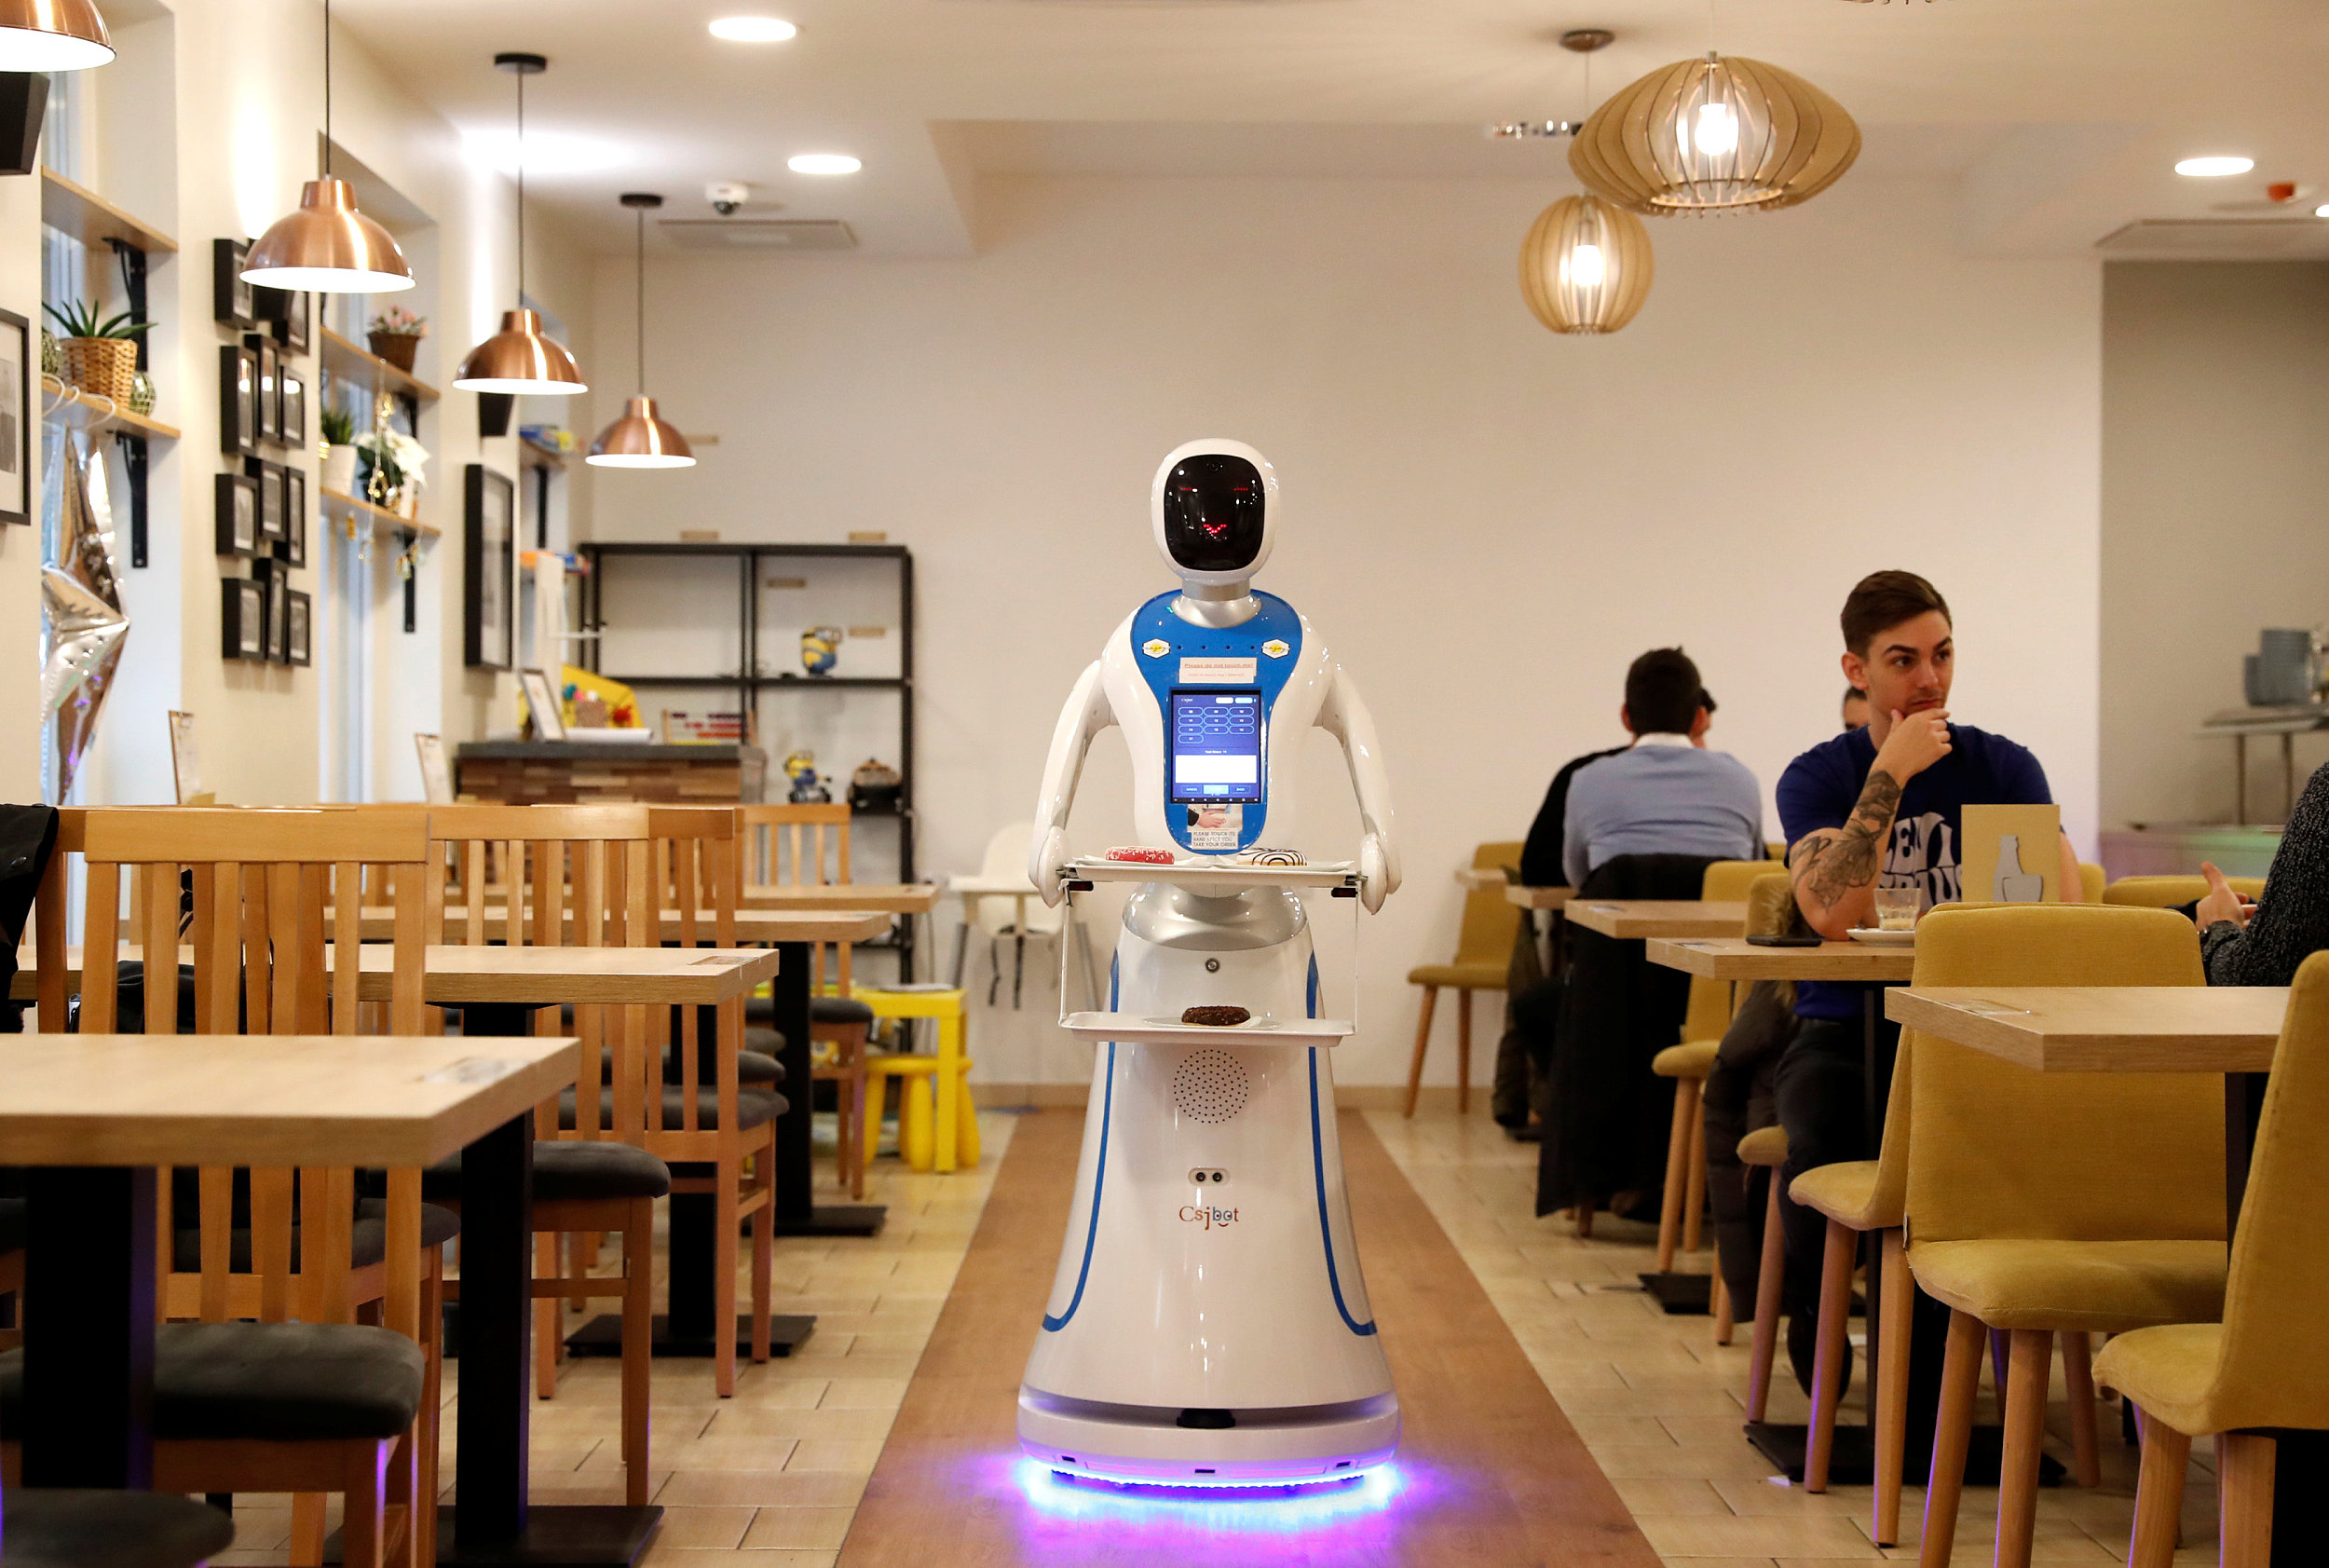 匈牙利:机器人服务员亮相咖啡馆 儿童好奇围观